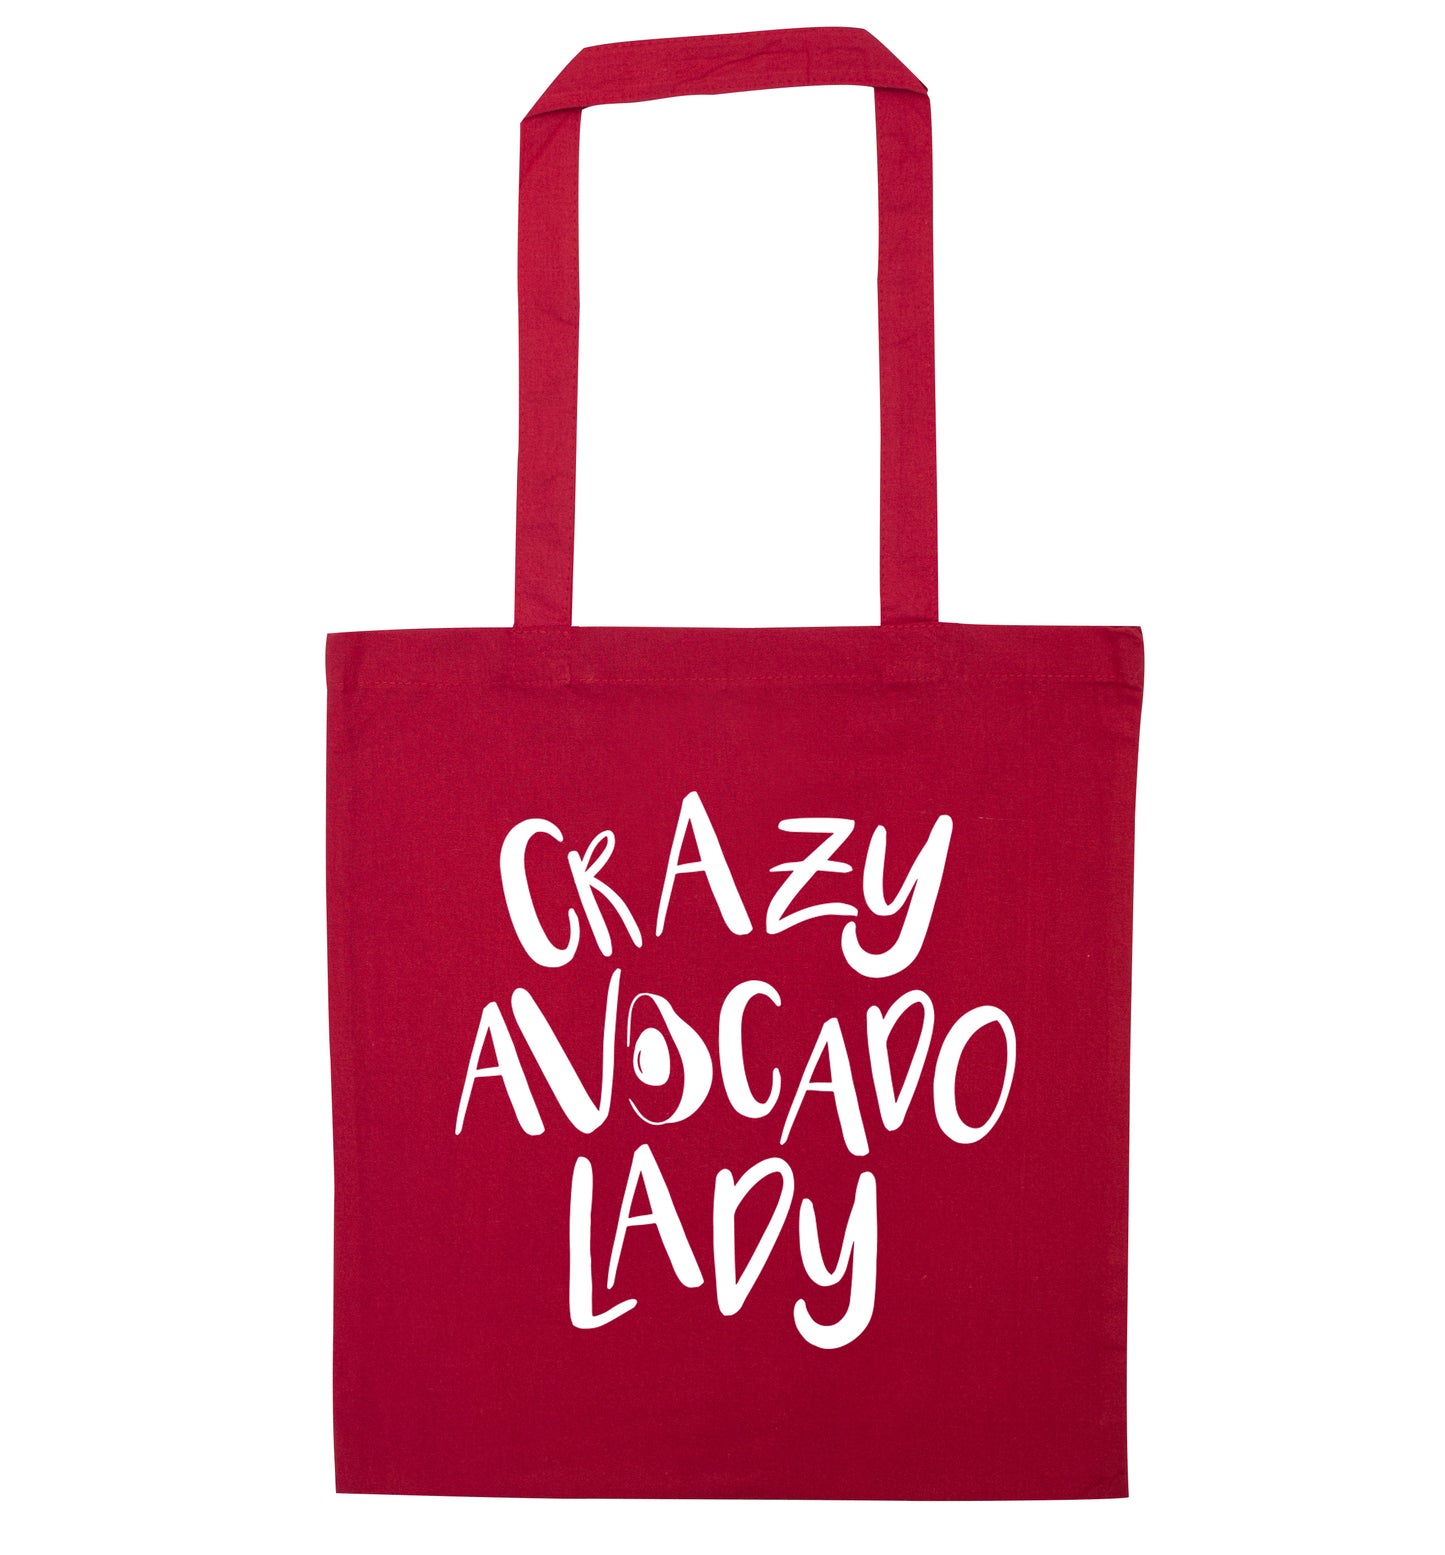 Crazy avocado lady red tote bag